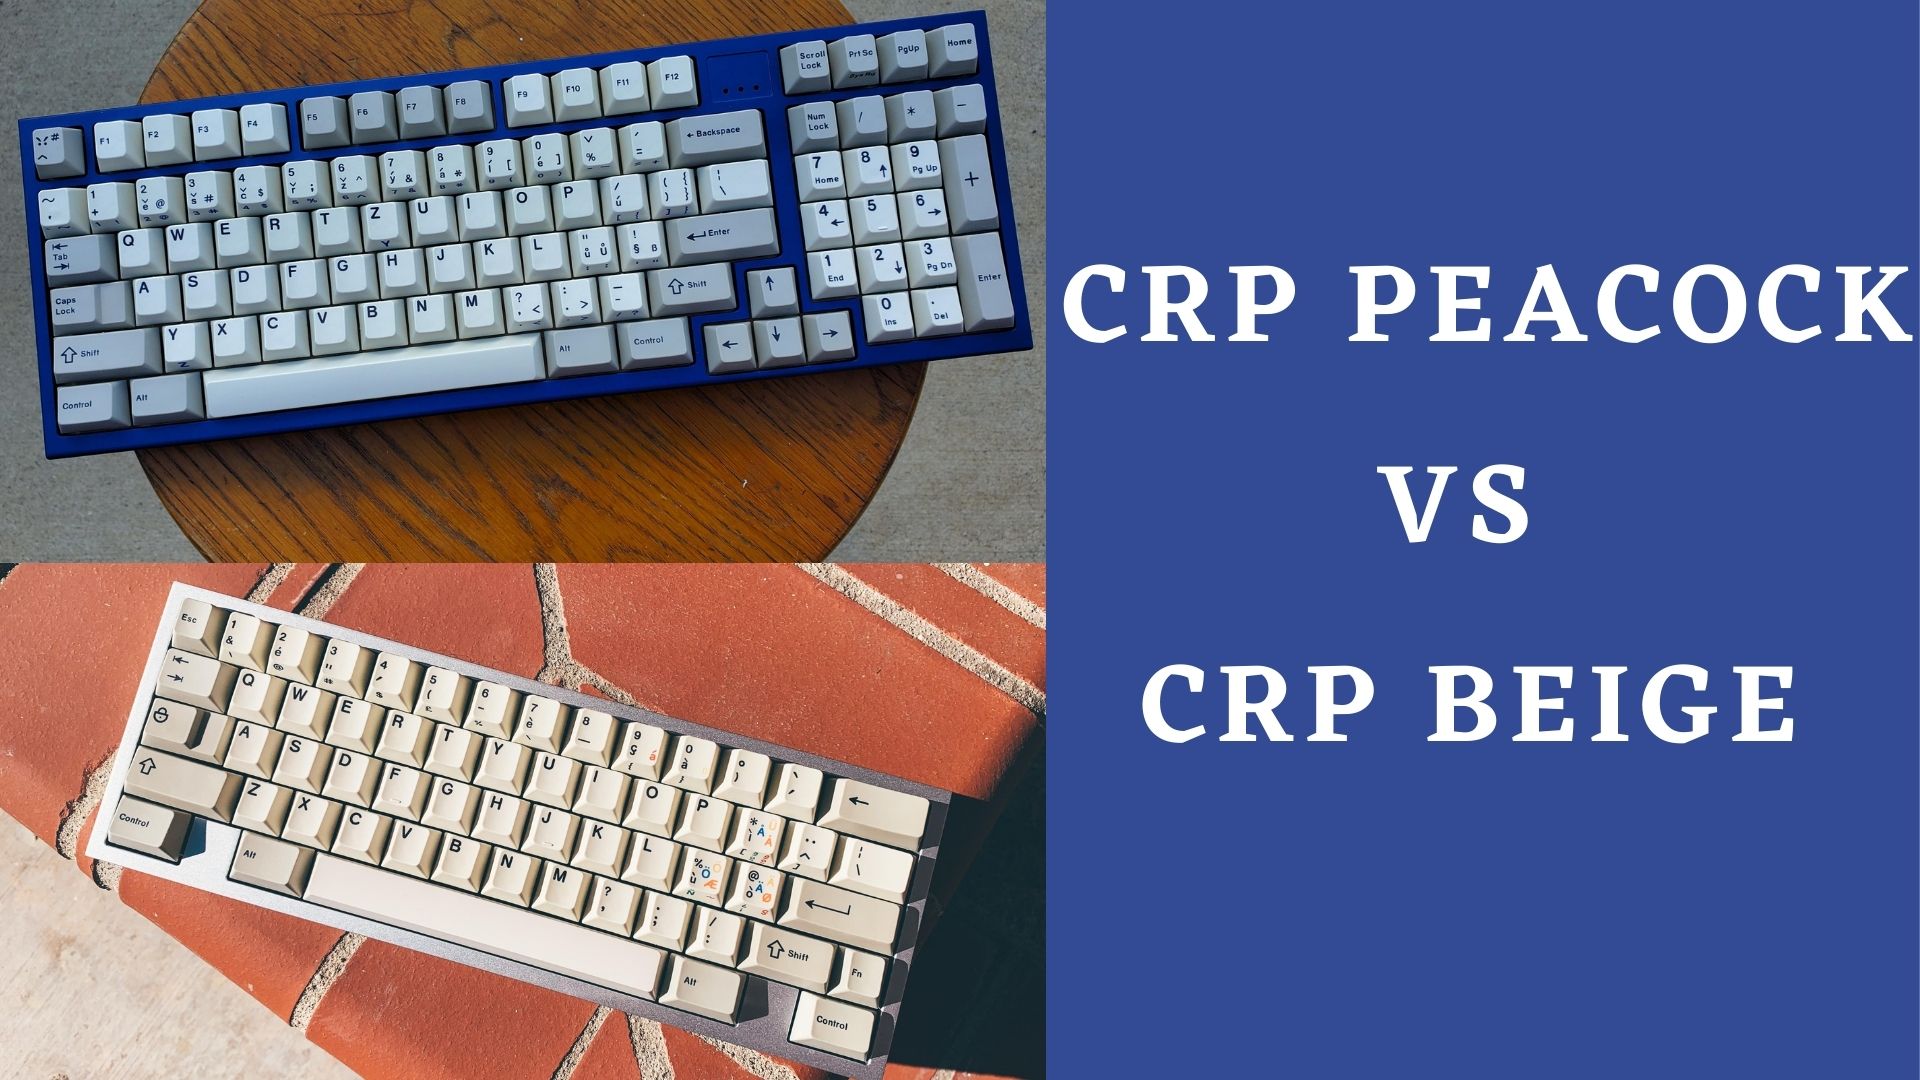 CRP Peacock vs CRP Beige